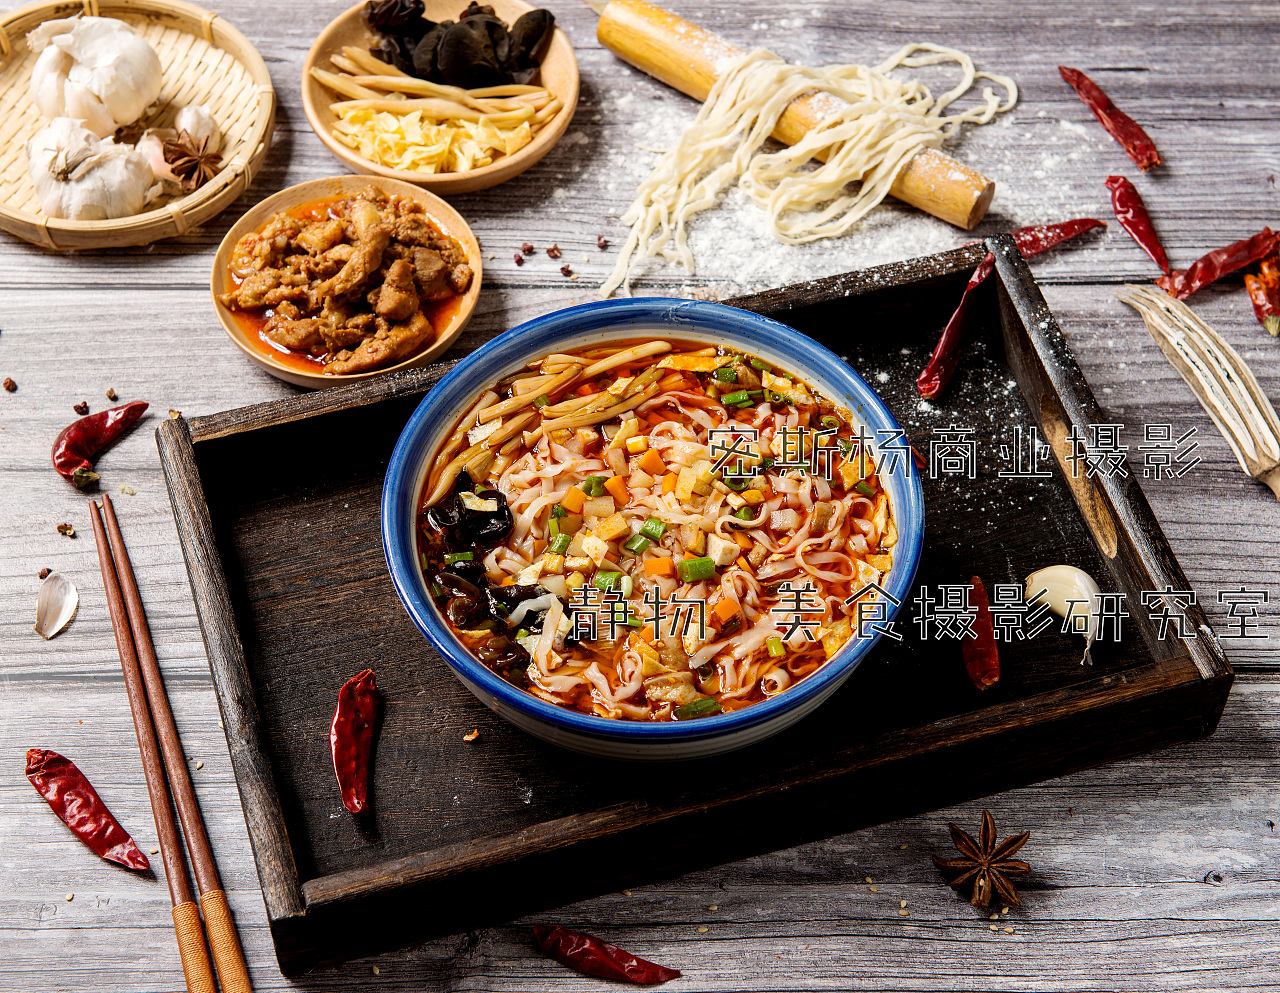 中国十大美食 中国最好吃的15种美食介绍 - 知乎